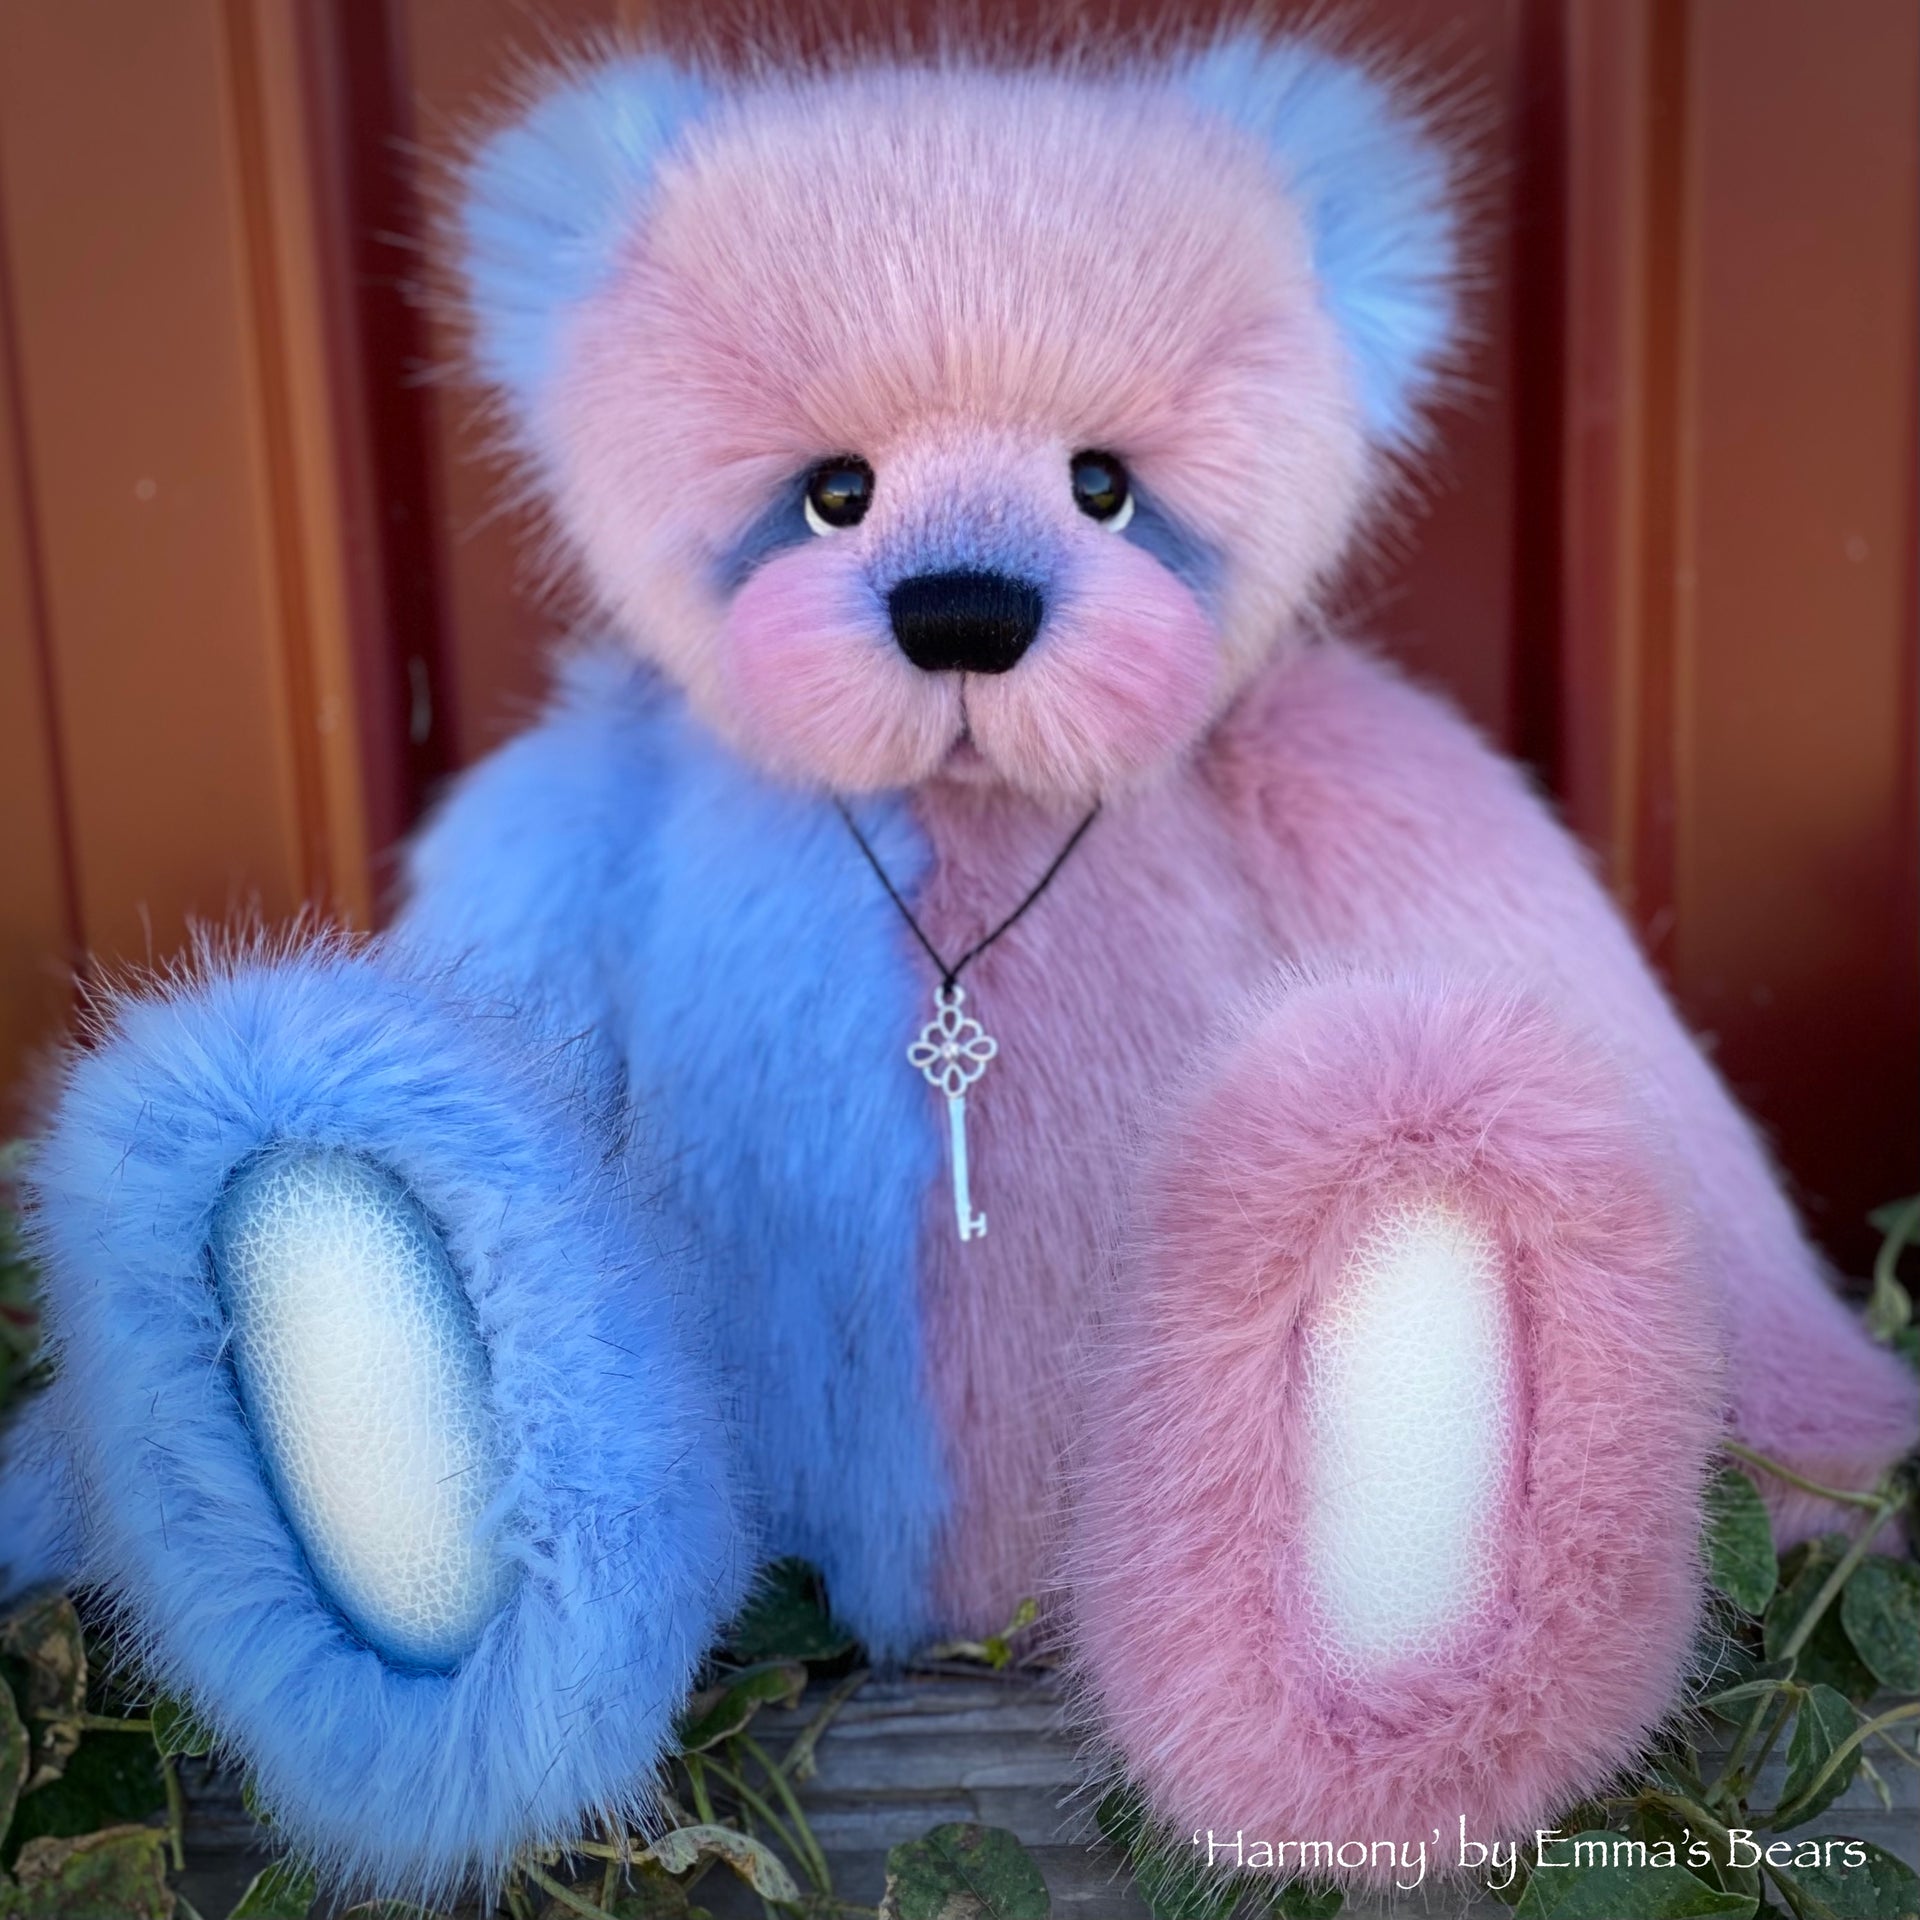 Harmony - 14" Faux Fur artist bear by Emmas Bears - OOAK